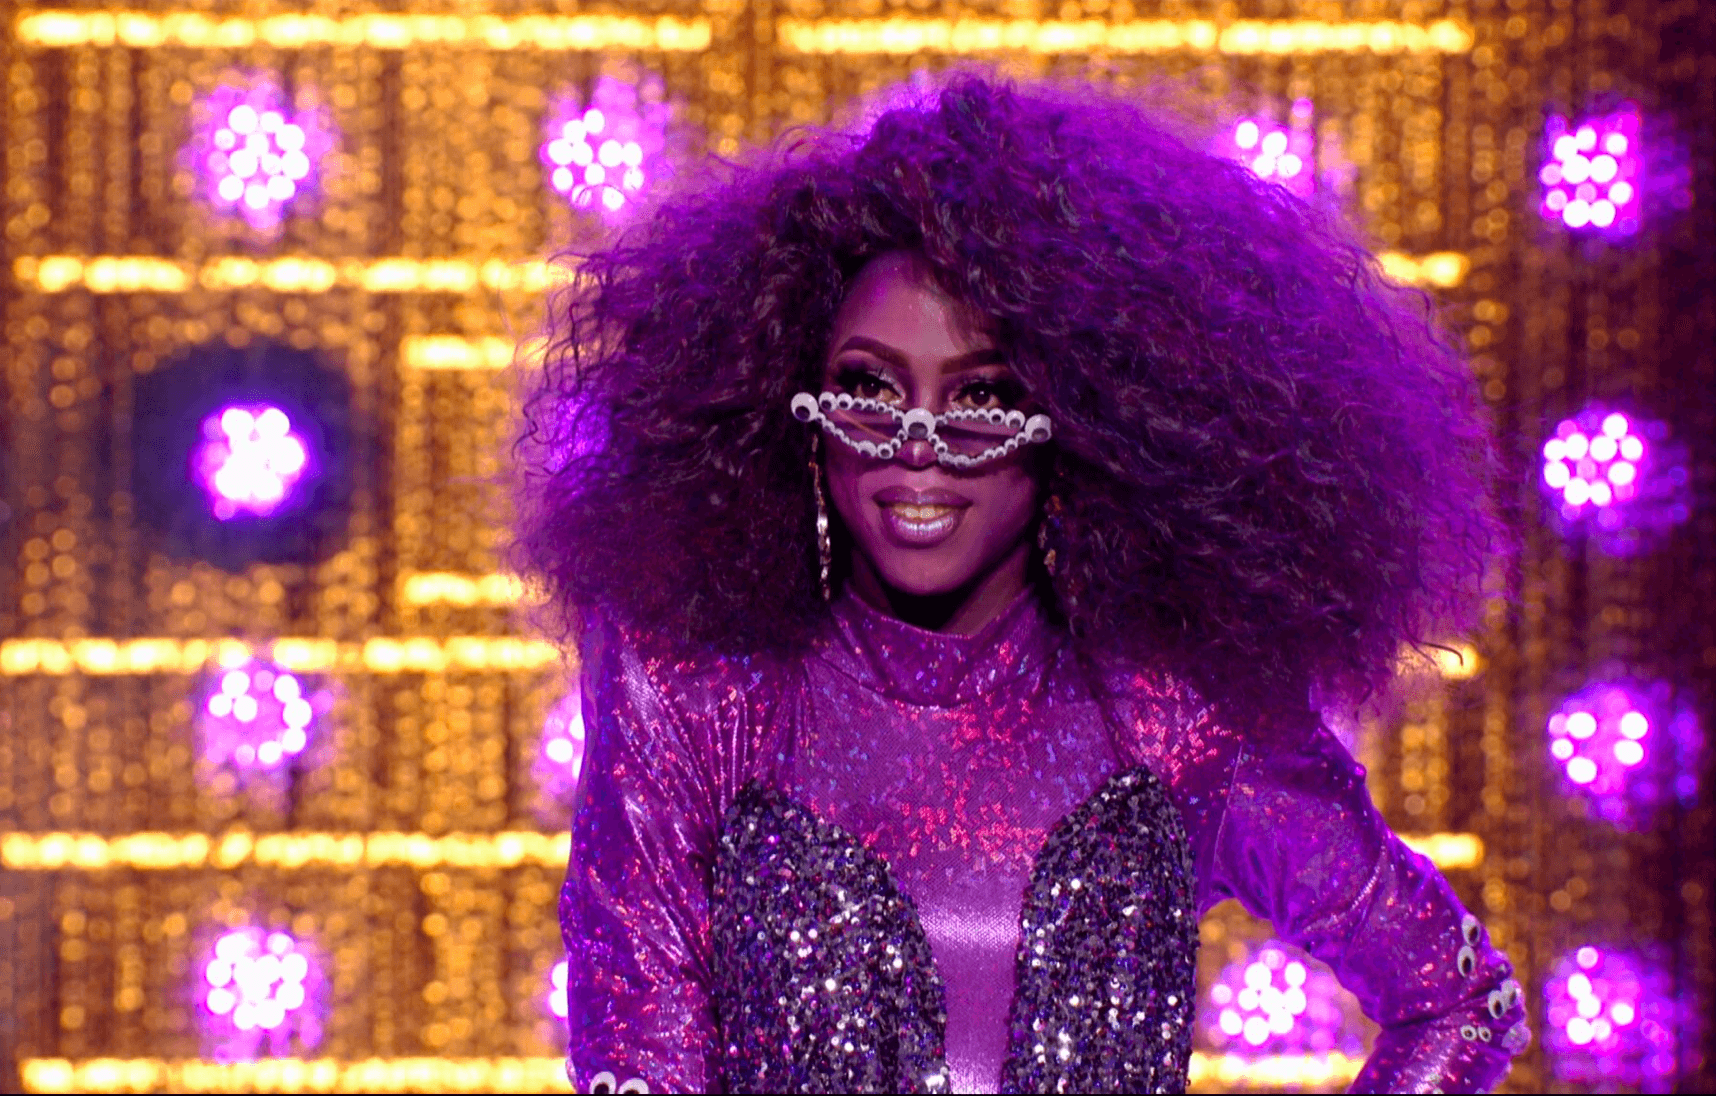 Cena do reality show All Stars 6, mostra Ra'Jah O'Hara na passarela, vestindo um macacão roxo, com o rosto, a peruca e os óculos pintados da mesma cor. Ela sorri e olha por cima dos óculos escuros.